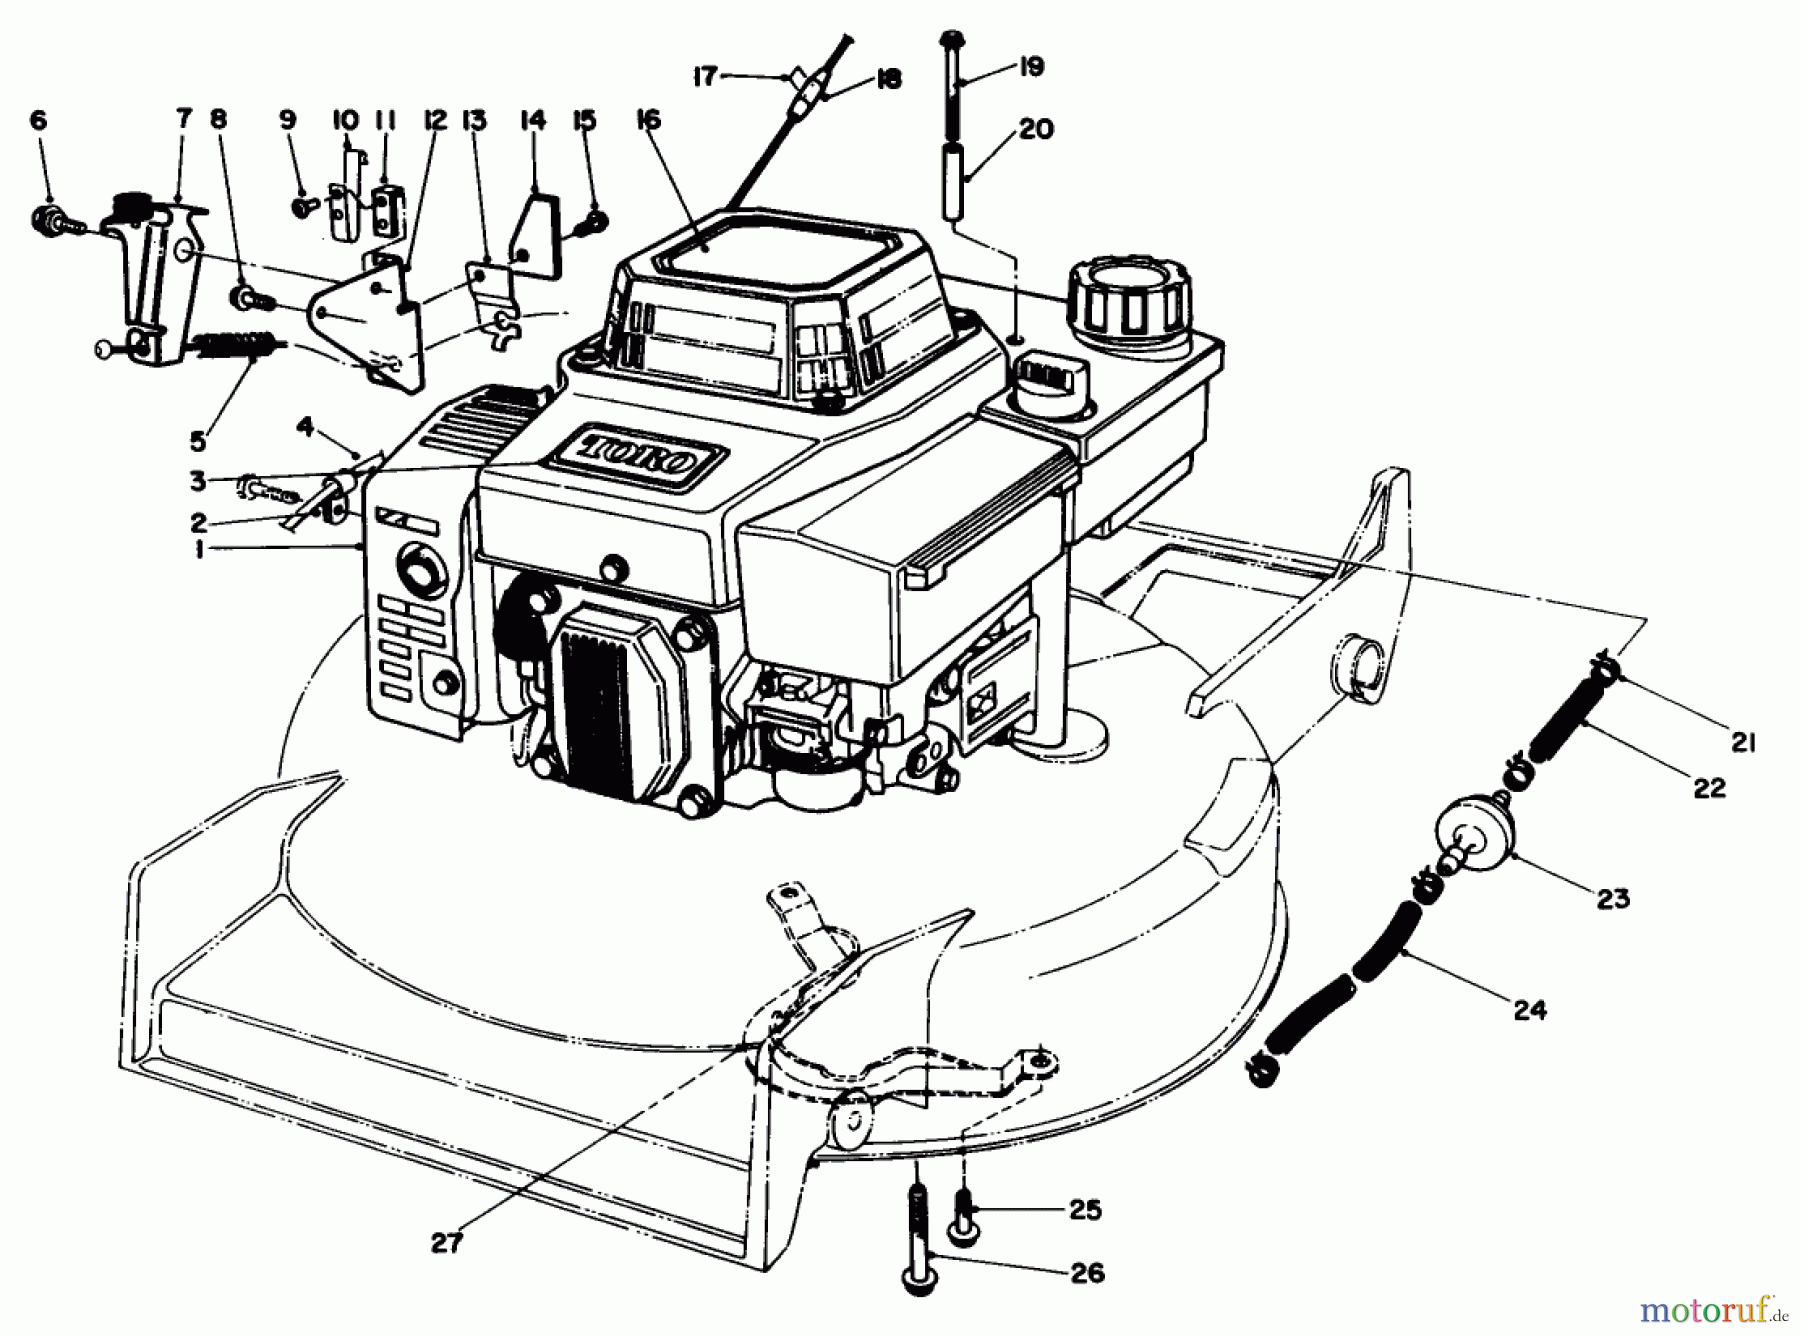  Toro Neu Mowers, Walk-Behind Seite 1 20320 - Toro Lawnmower, 1992 (2000001-2999999) ENGINE ASSEMBLY